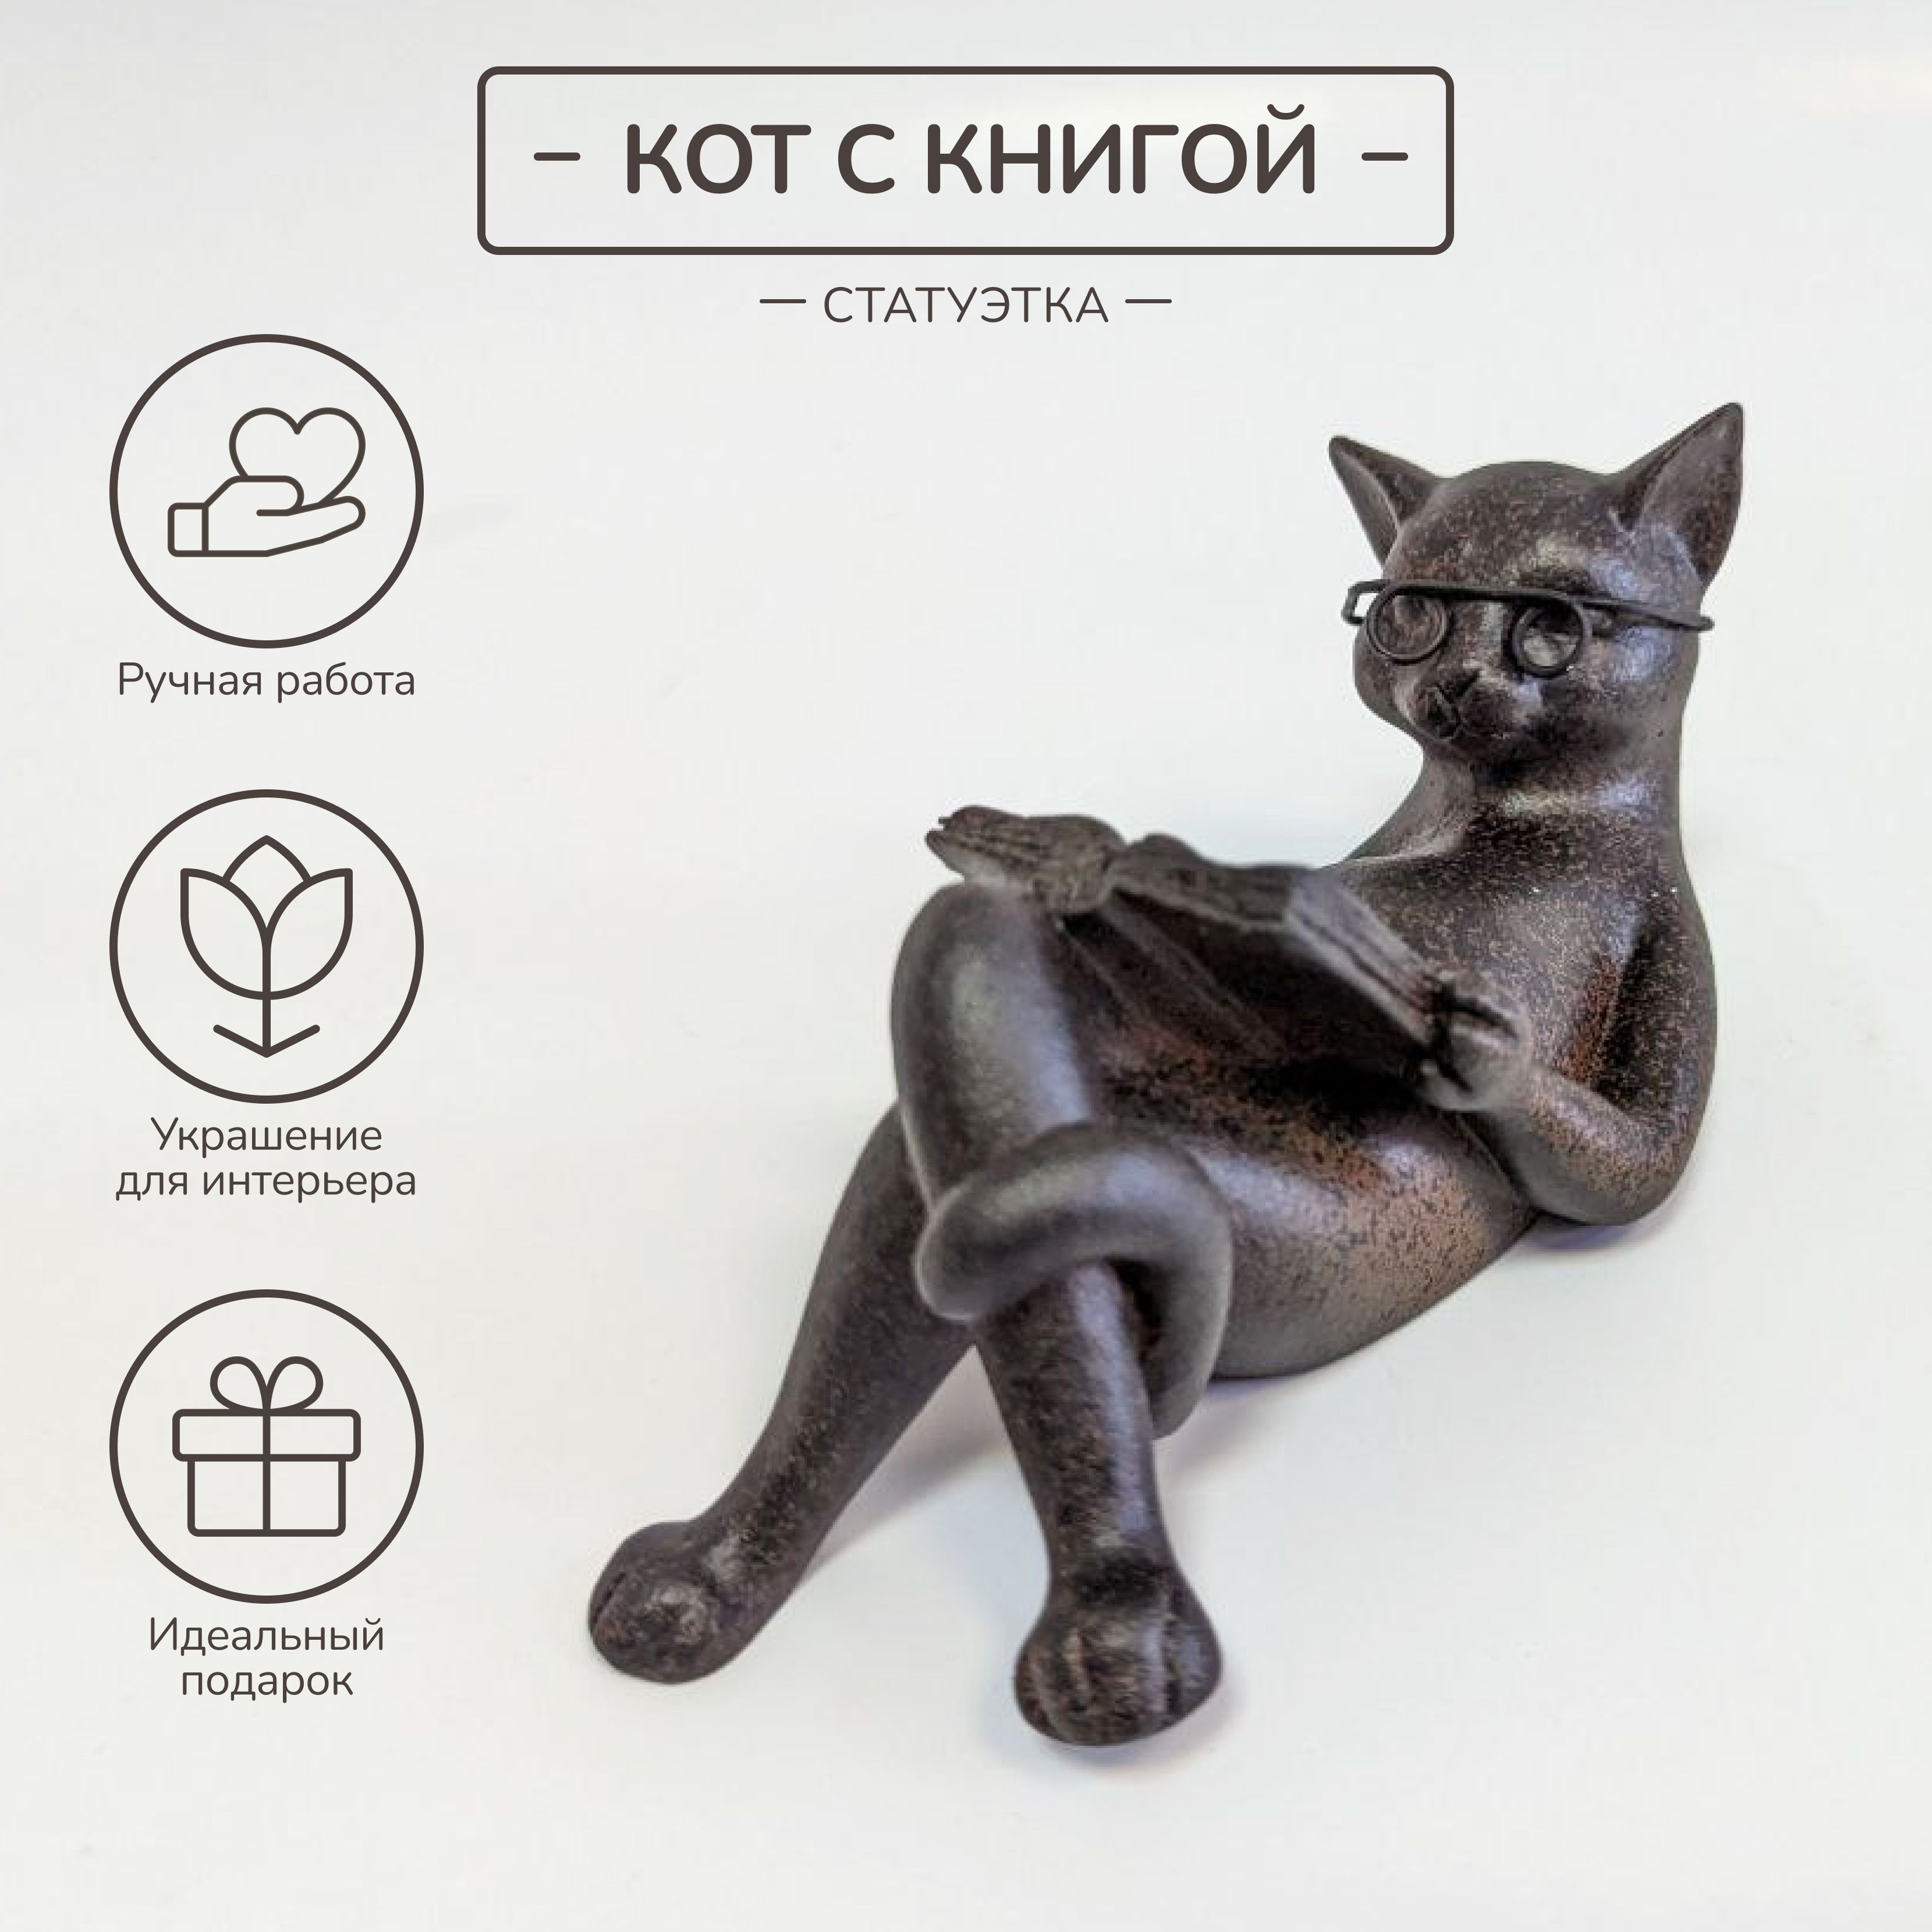 Купить декоративные статуэтки и фигурки в Киеве: магазин podaroktut